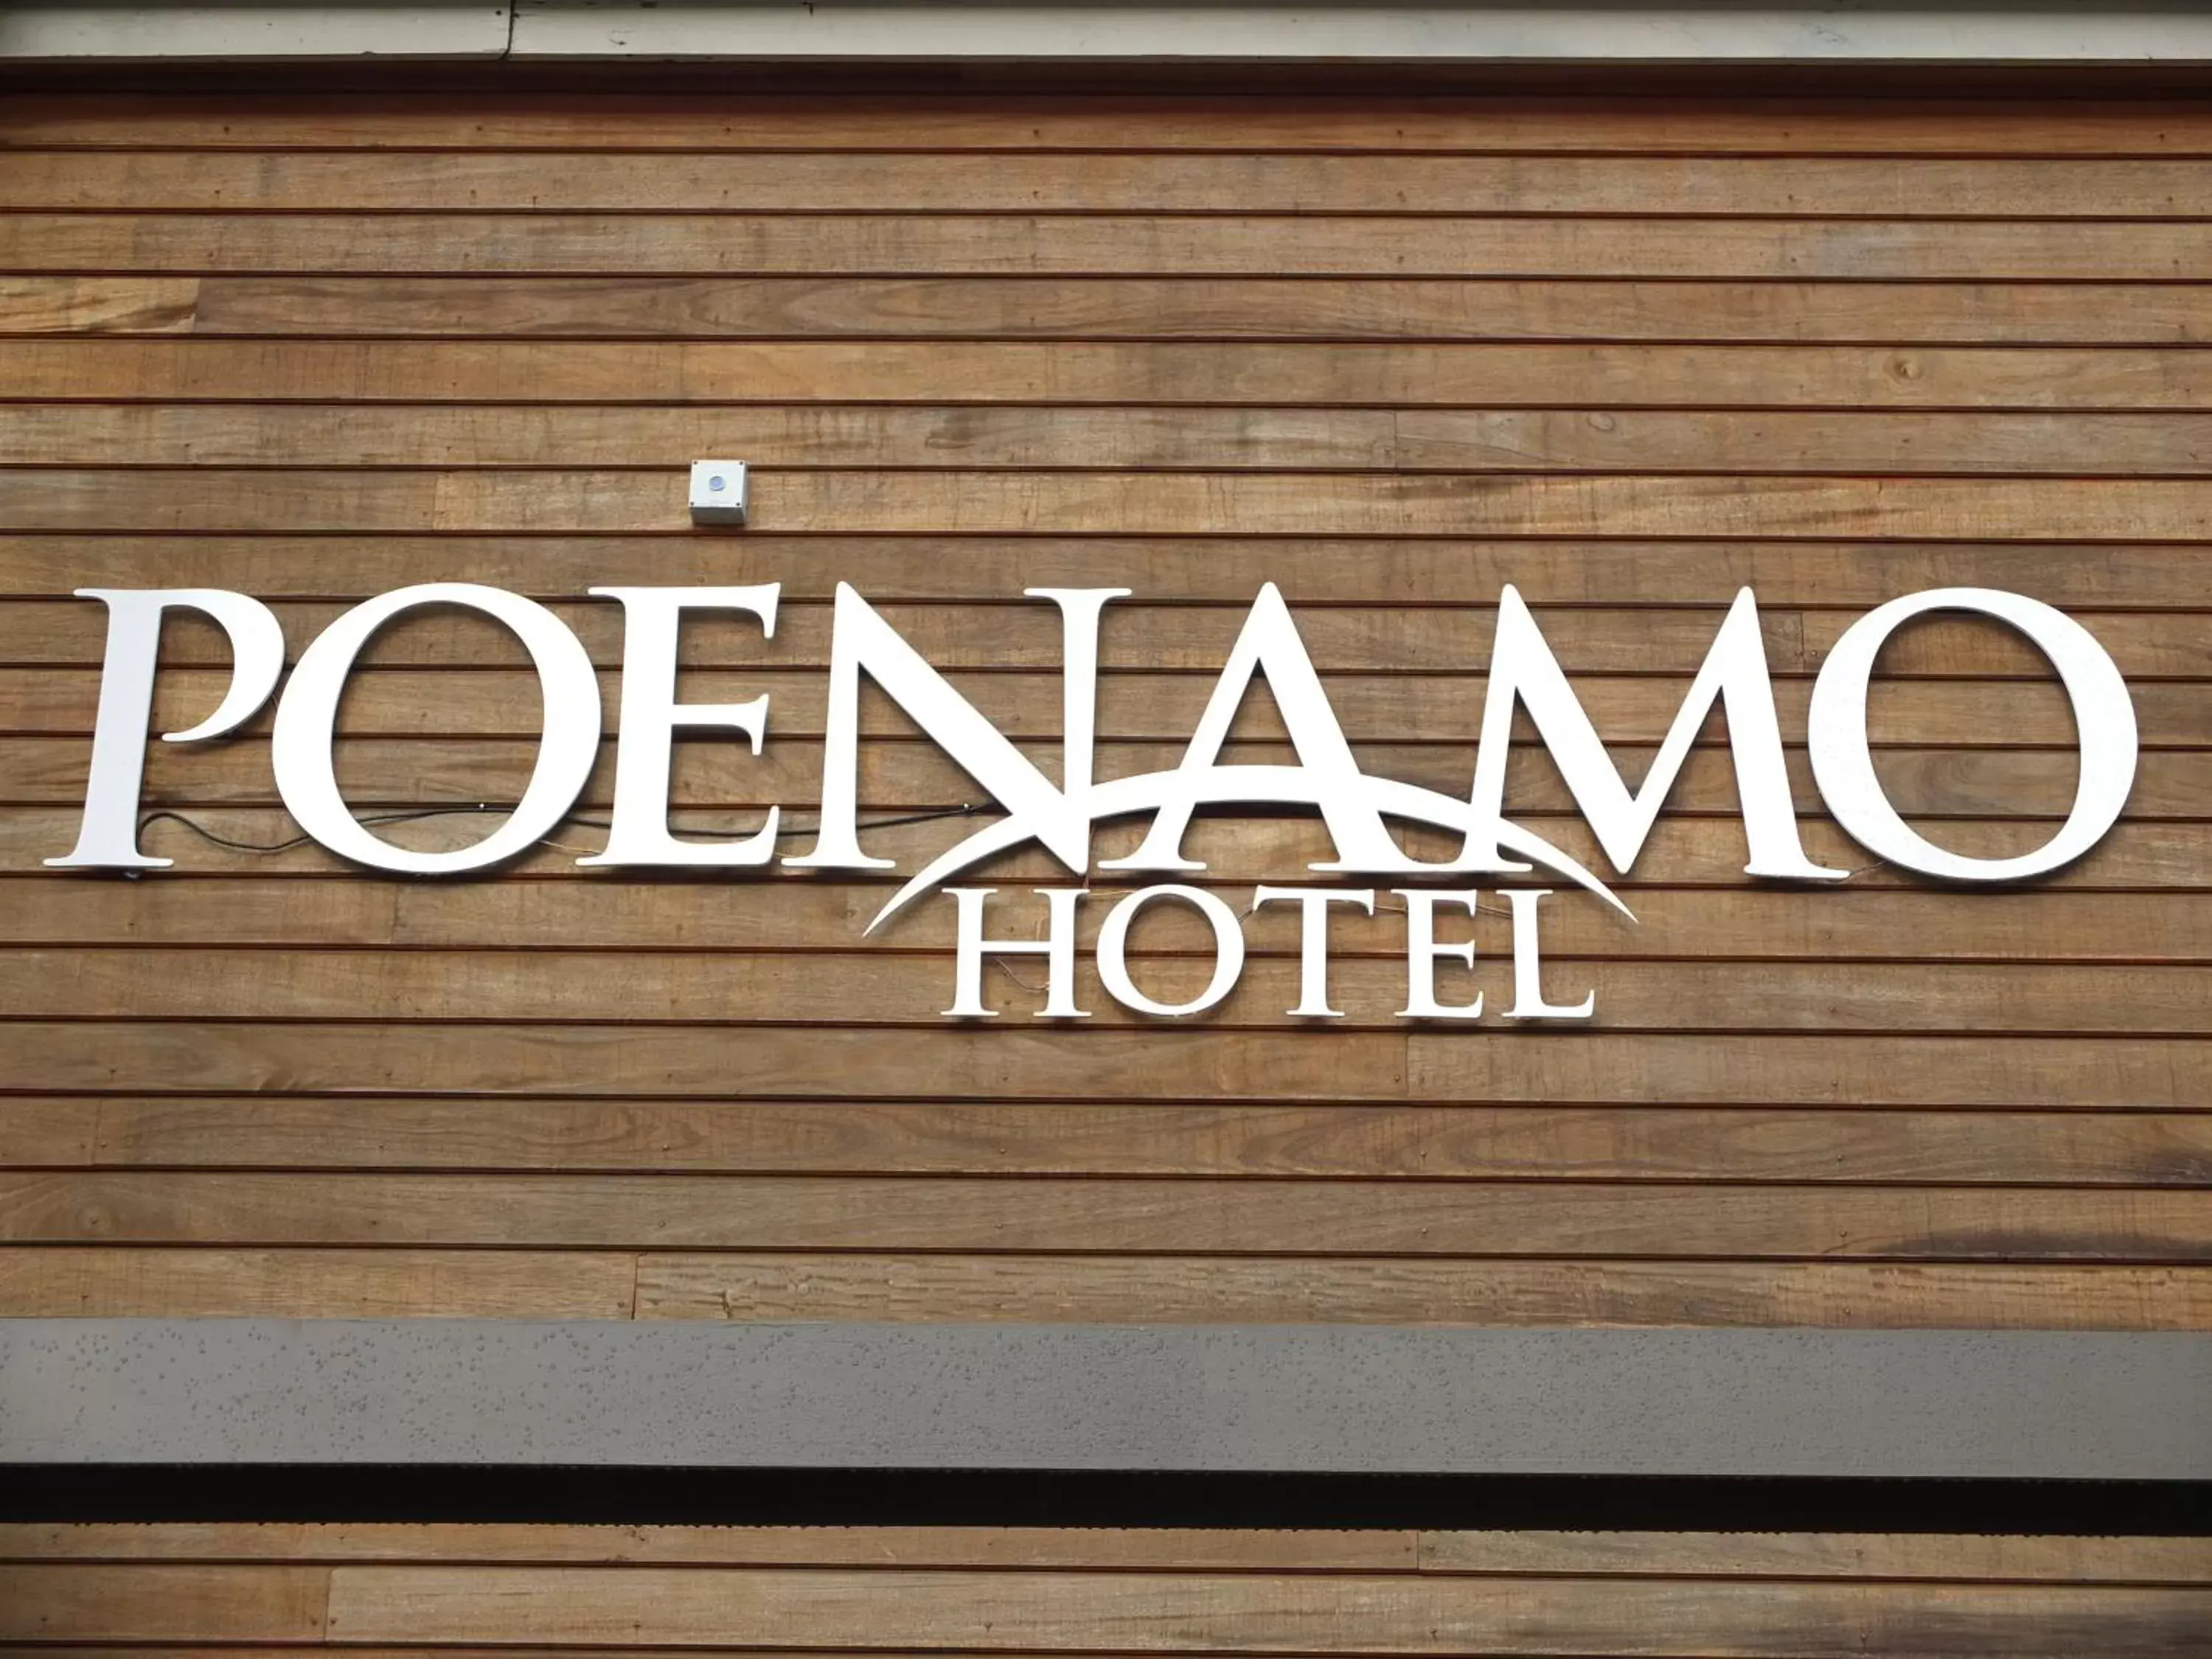 Property logo or sign in Poenamo Hotel